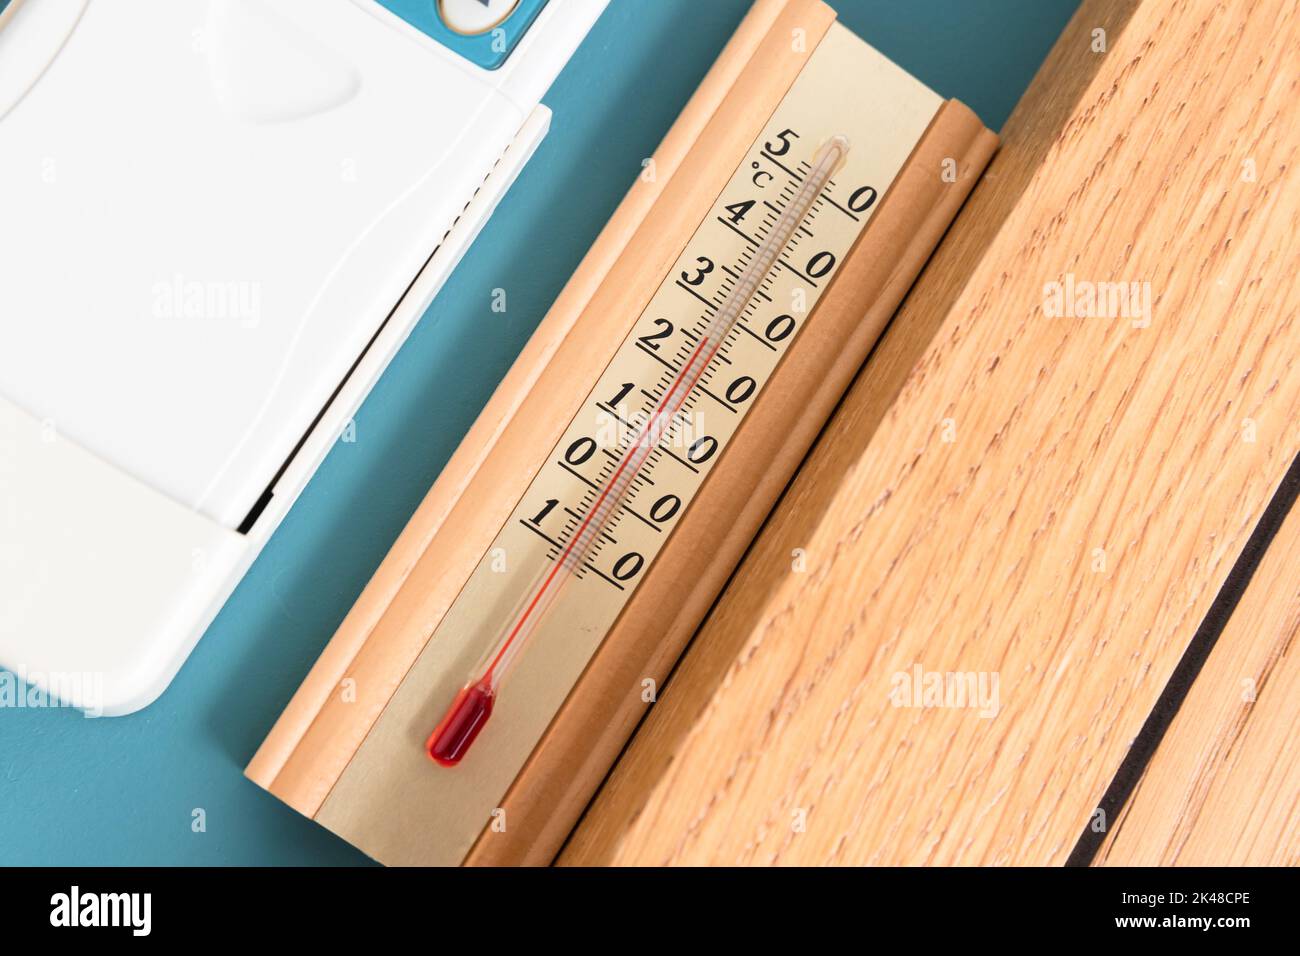 Termometro per uso domestico con alcol che mostra la temperatura in gradi Celsius sulla parete blu, foto ravvicinata Foto Stock